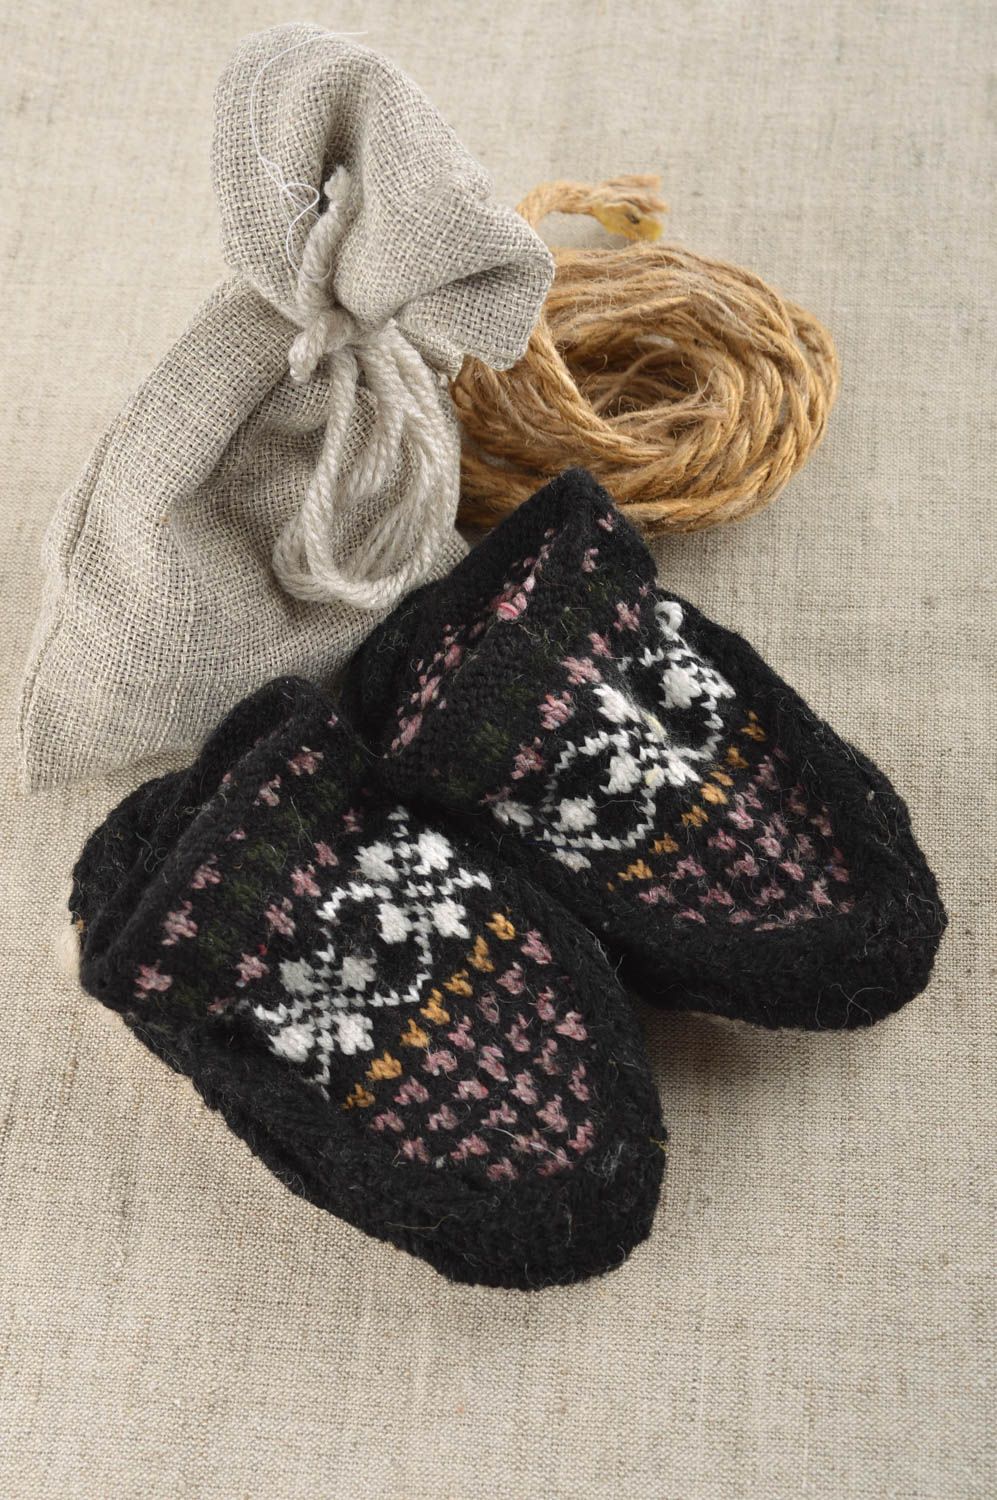 Pantuflas artesanales de lana natural ropa para niño cálida regalo original foto 1